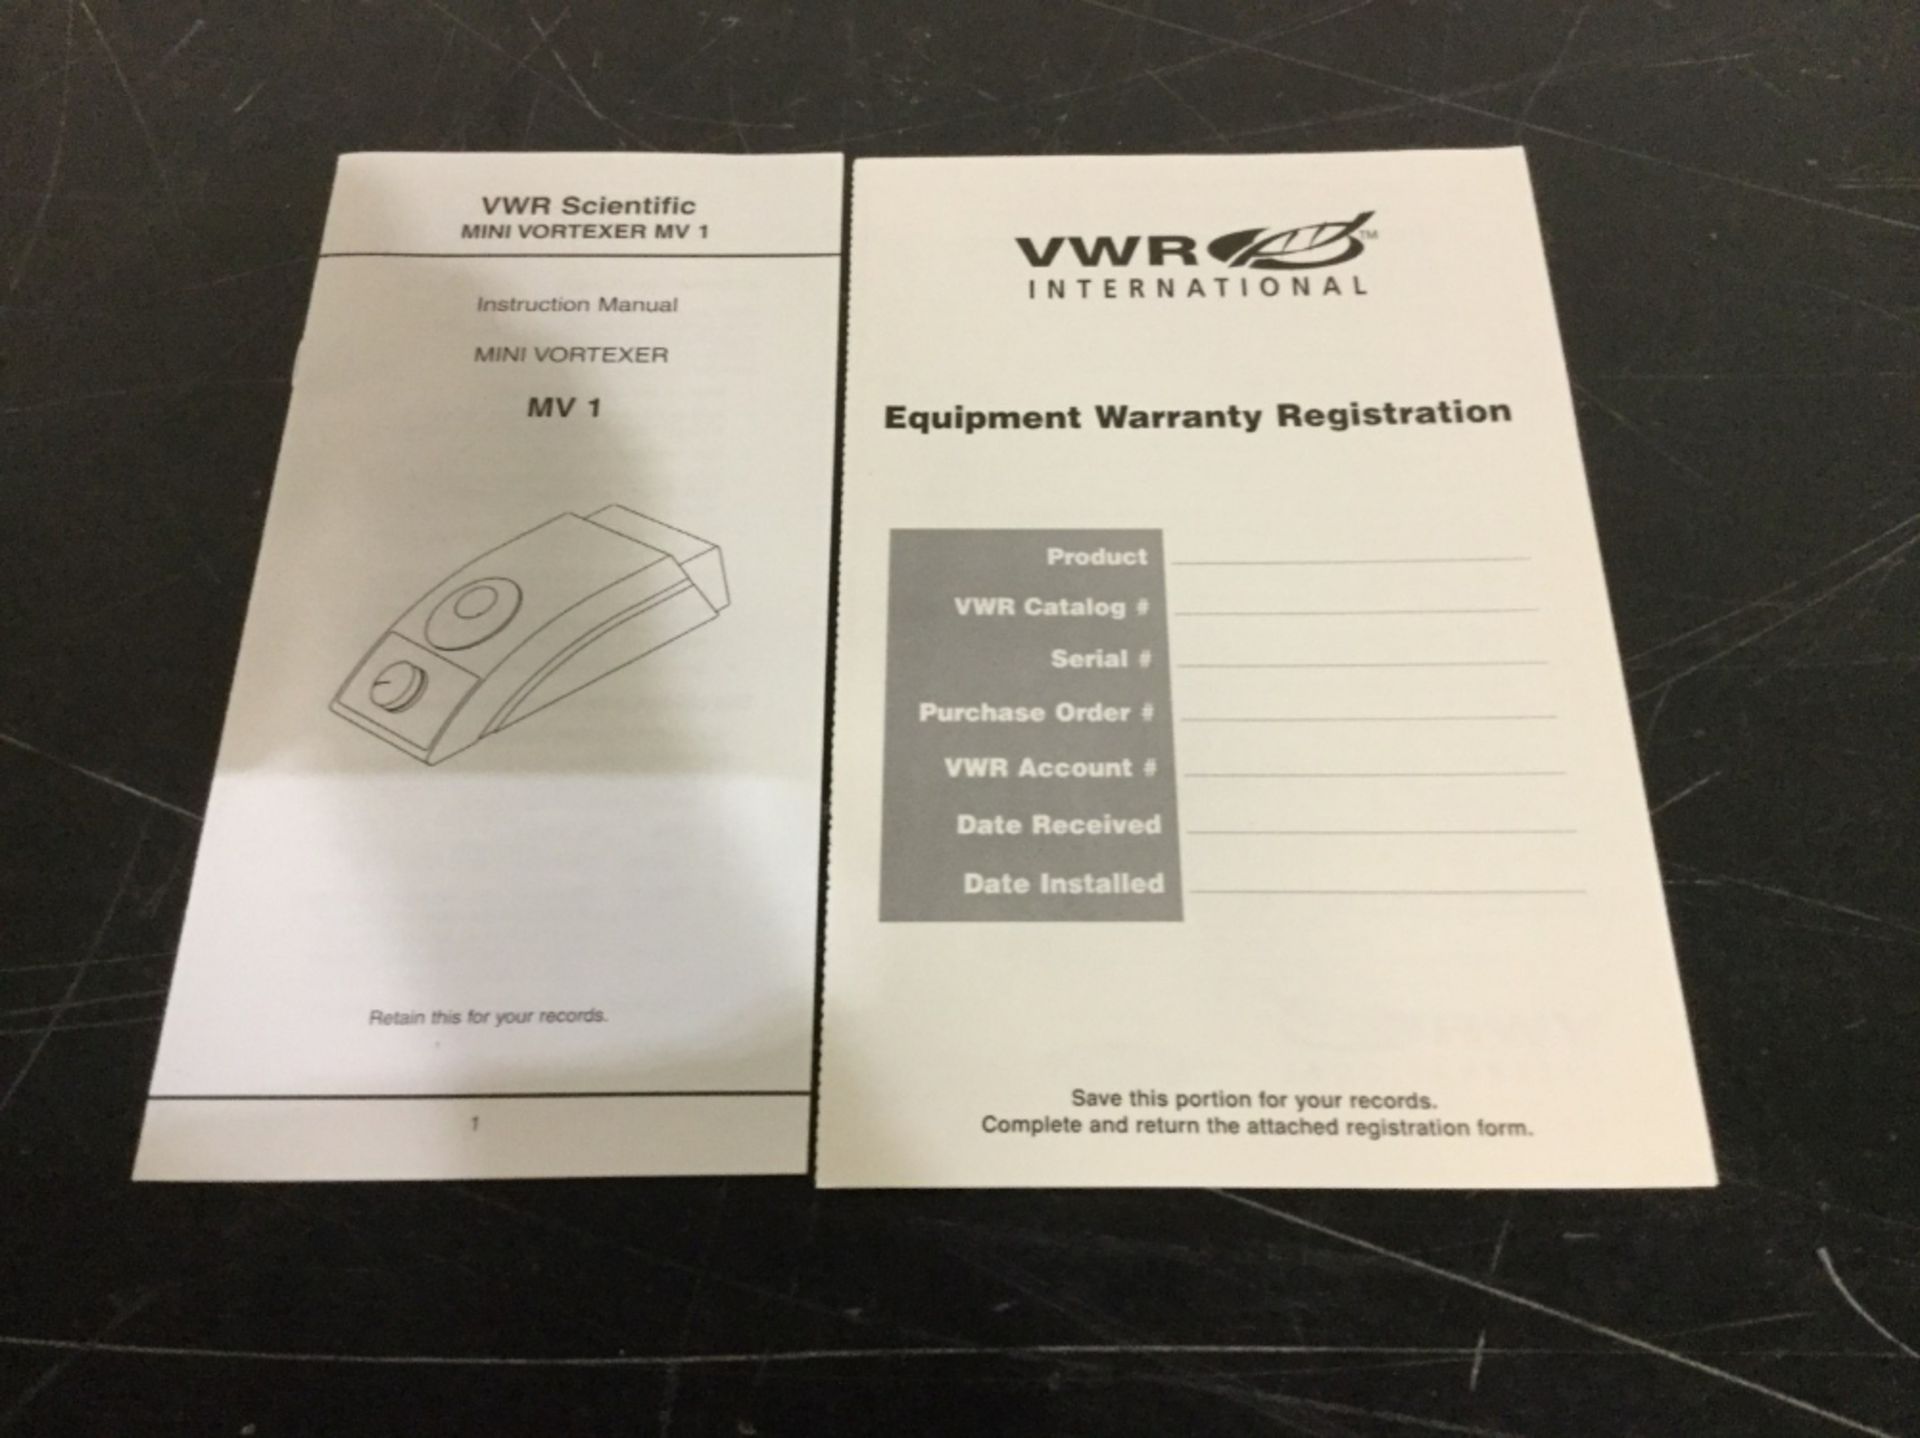 VWR MV1 Mini Vortexer New in Box - Image 2 of 3